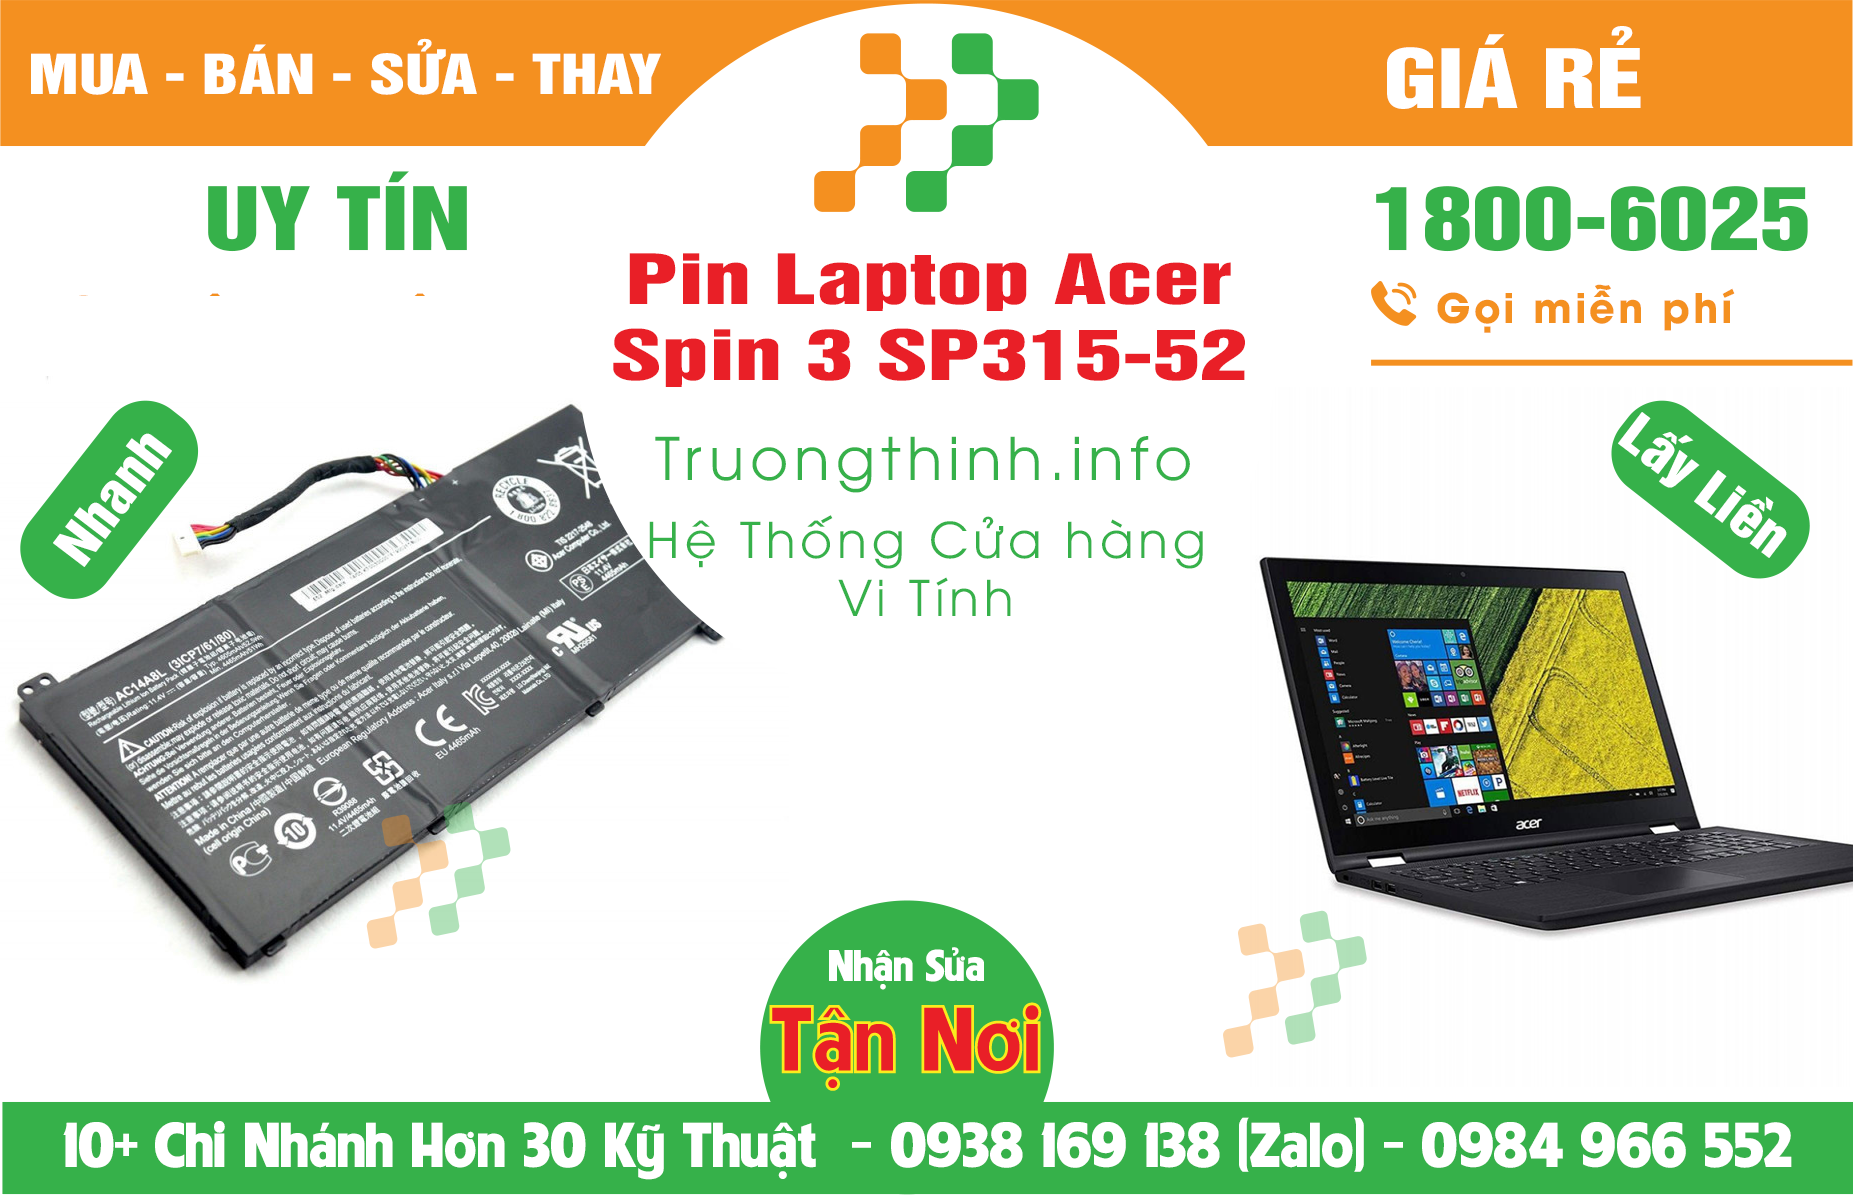 Mua Bán Pin Laptop Acer Spin 3 SP315-52 Giá Rẻ | Máy Tính Trường Thịnh Giá Rẻ